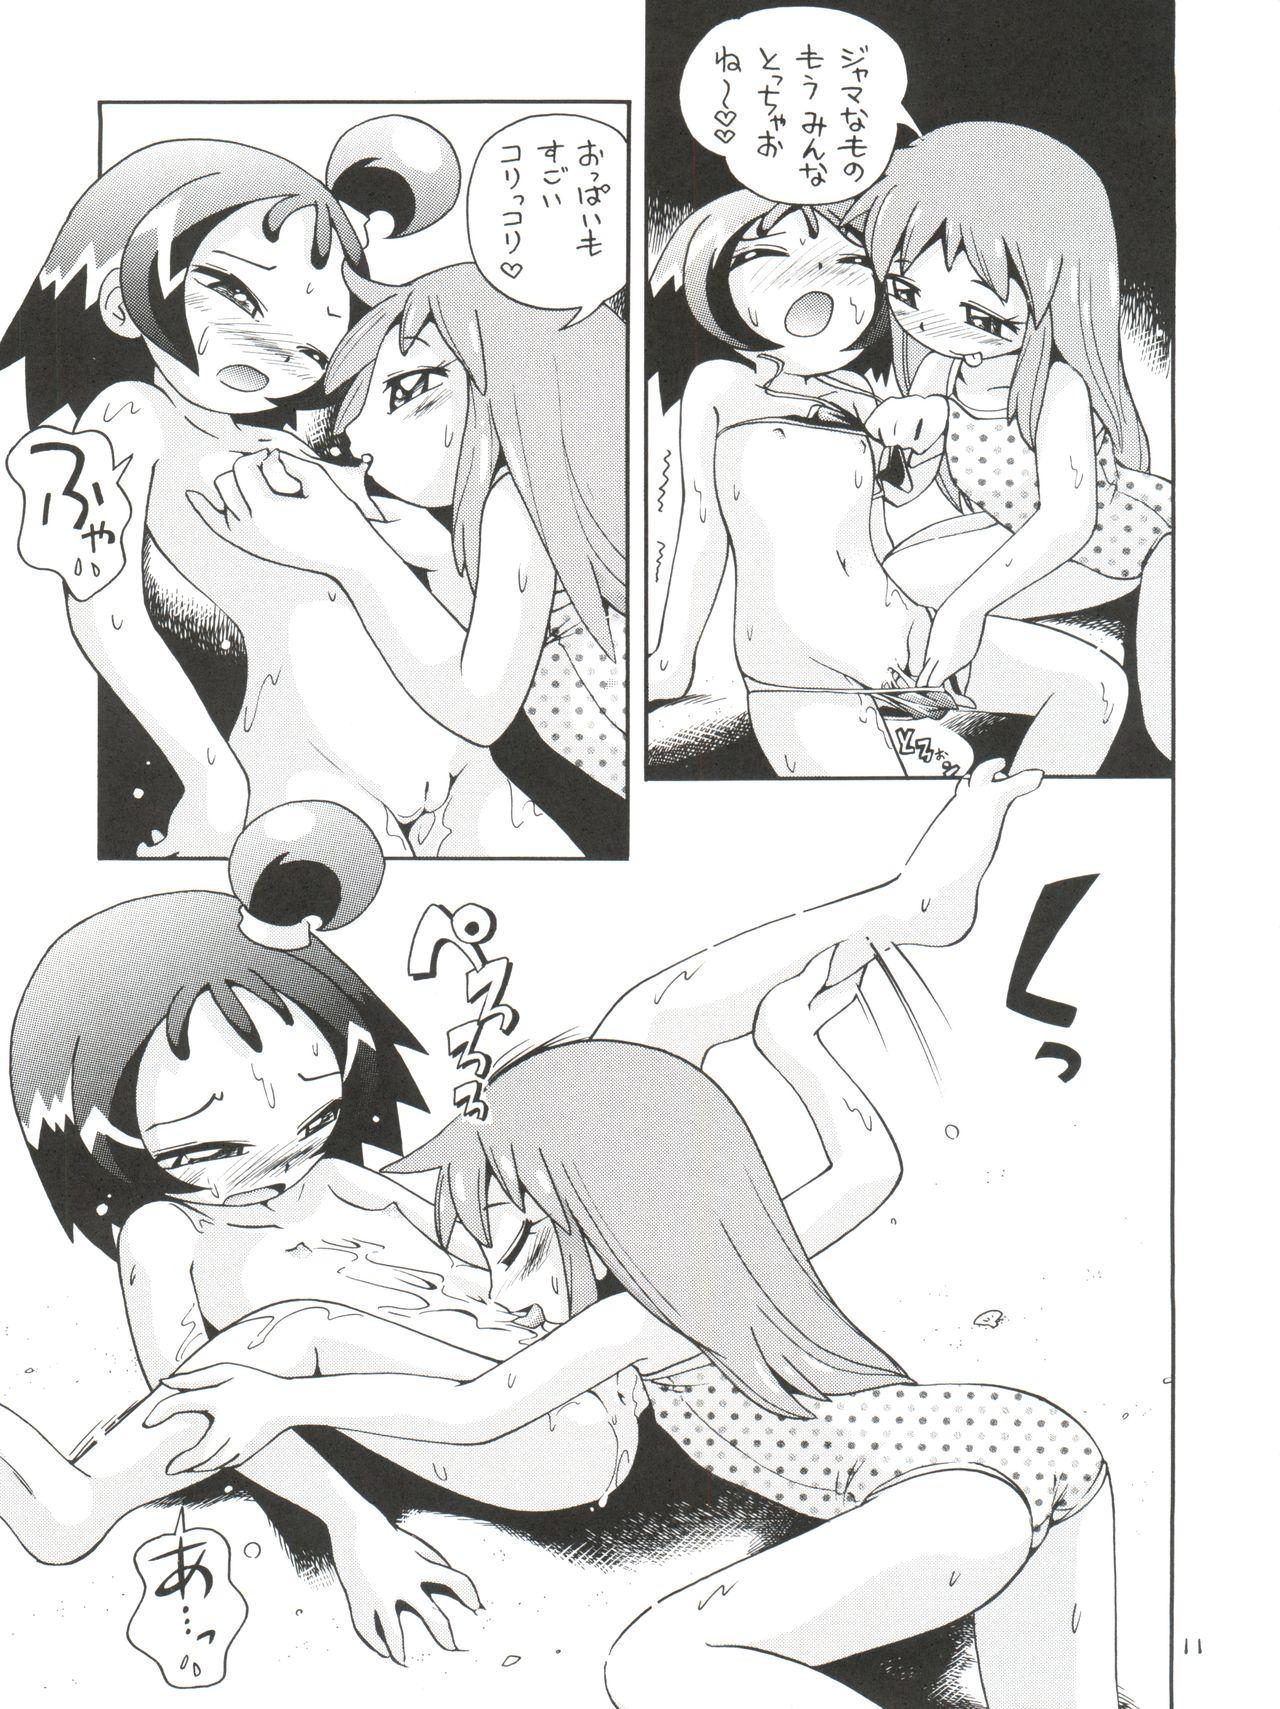 Shaking Puchi Pure - Cardcaptor sakura Ojamajo doremi Azumanga daioh Fushigiboshi no futagohime Nyanda kamen Nasty - Page 11